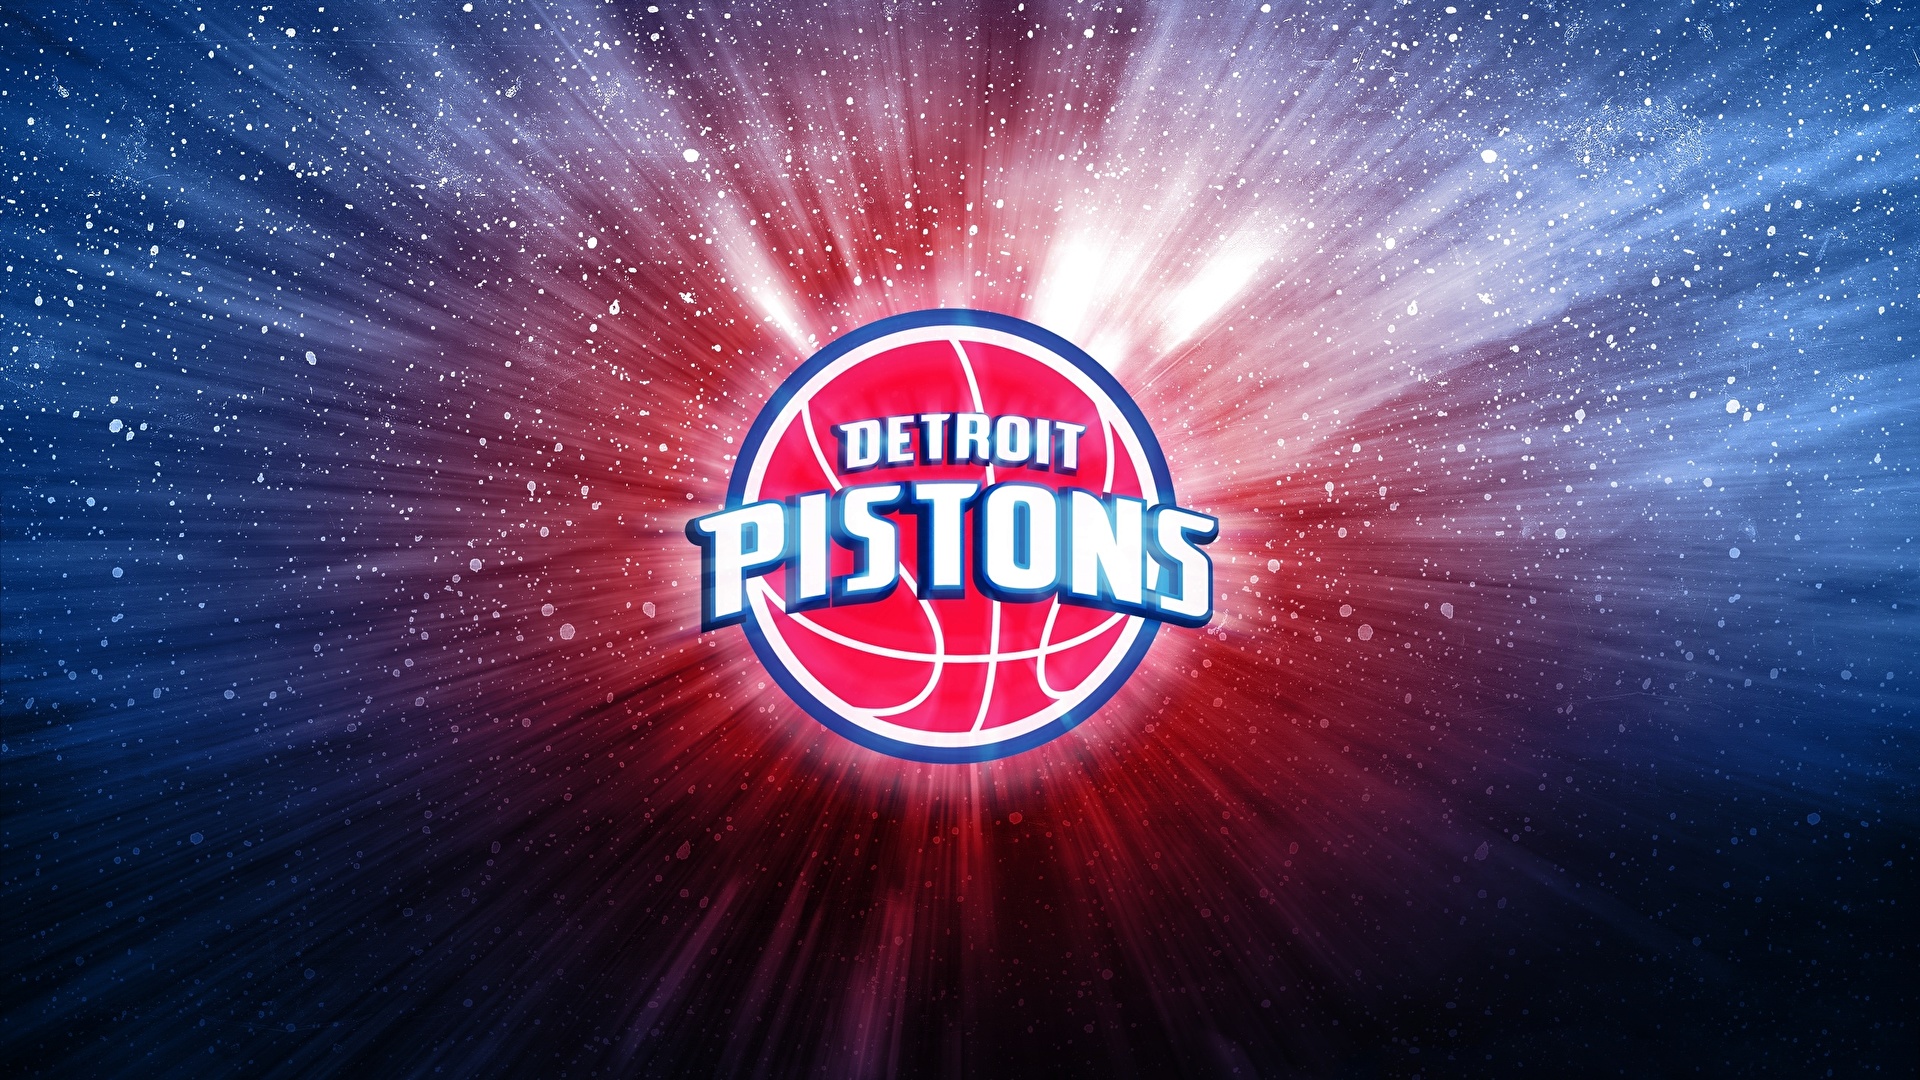 壁紙 19x1080 バスケットボール ロゴエンブレム Detroit Pistons Nba スポーツ ダウンロード 写真